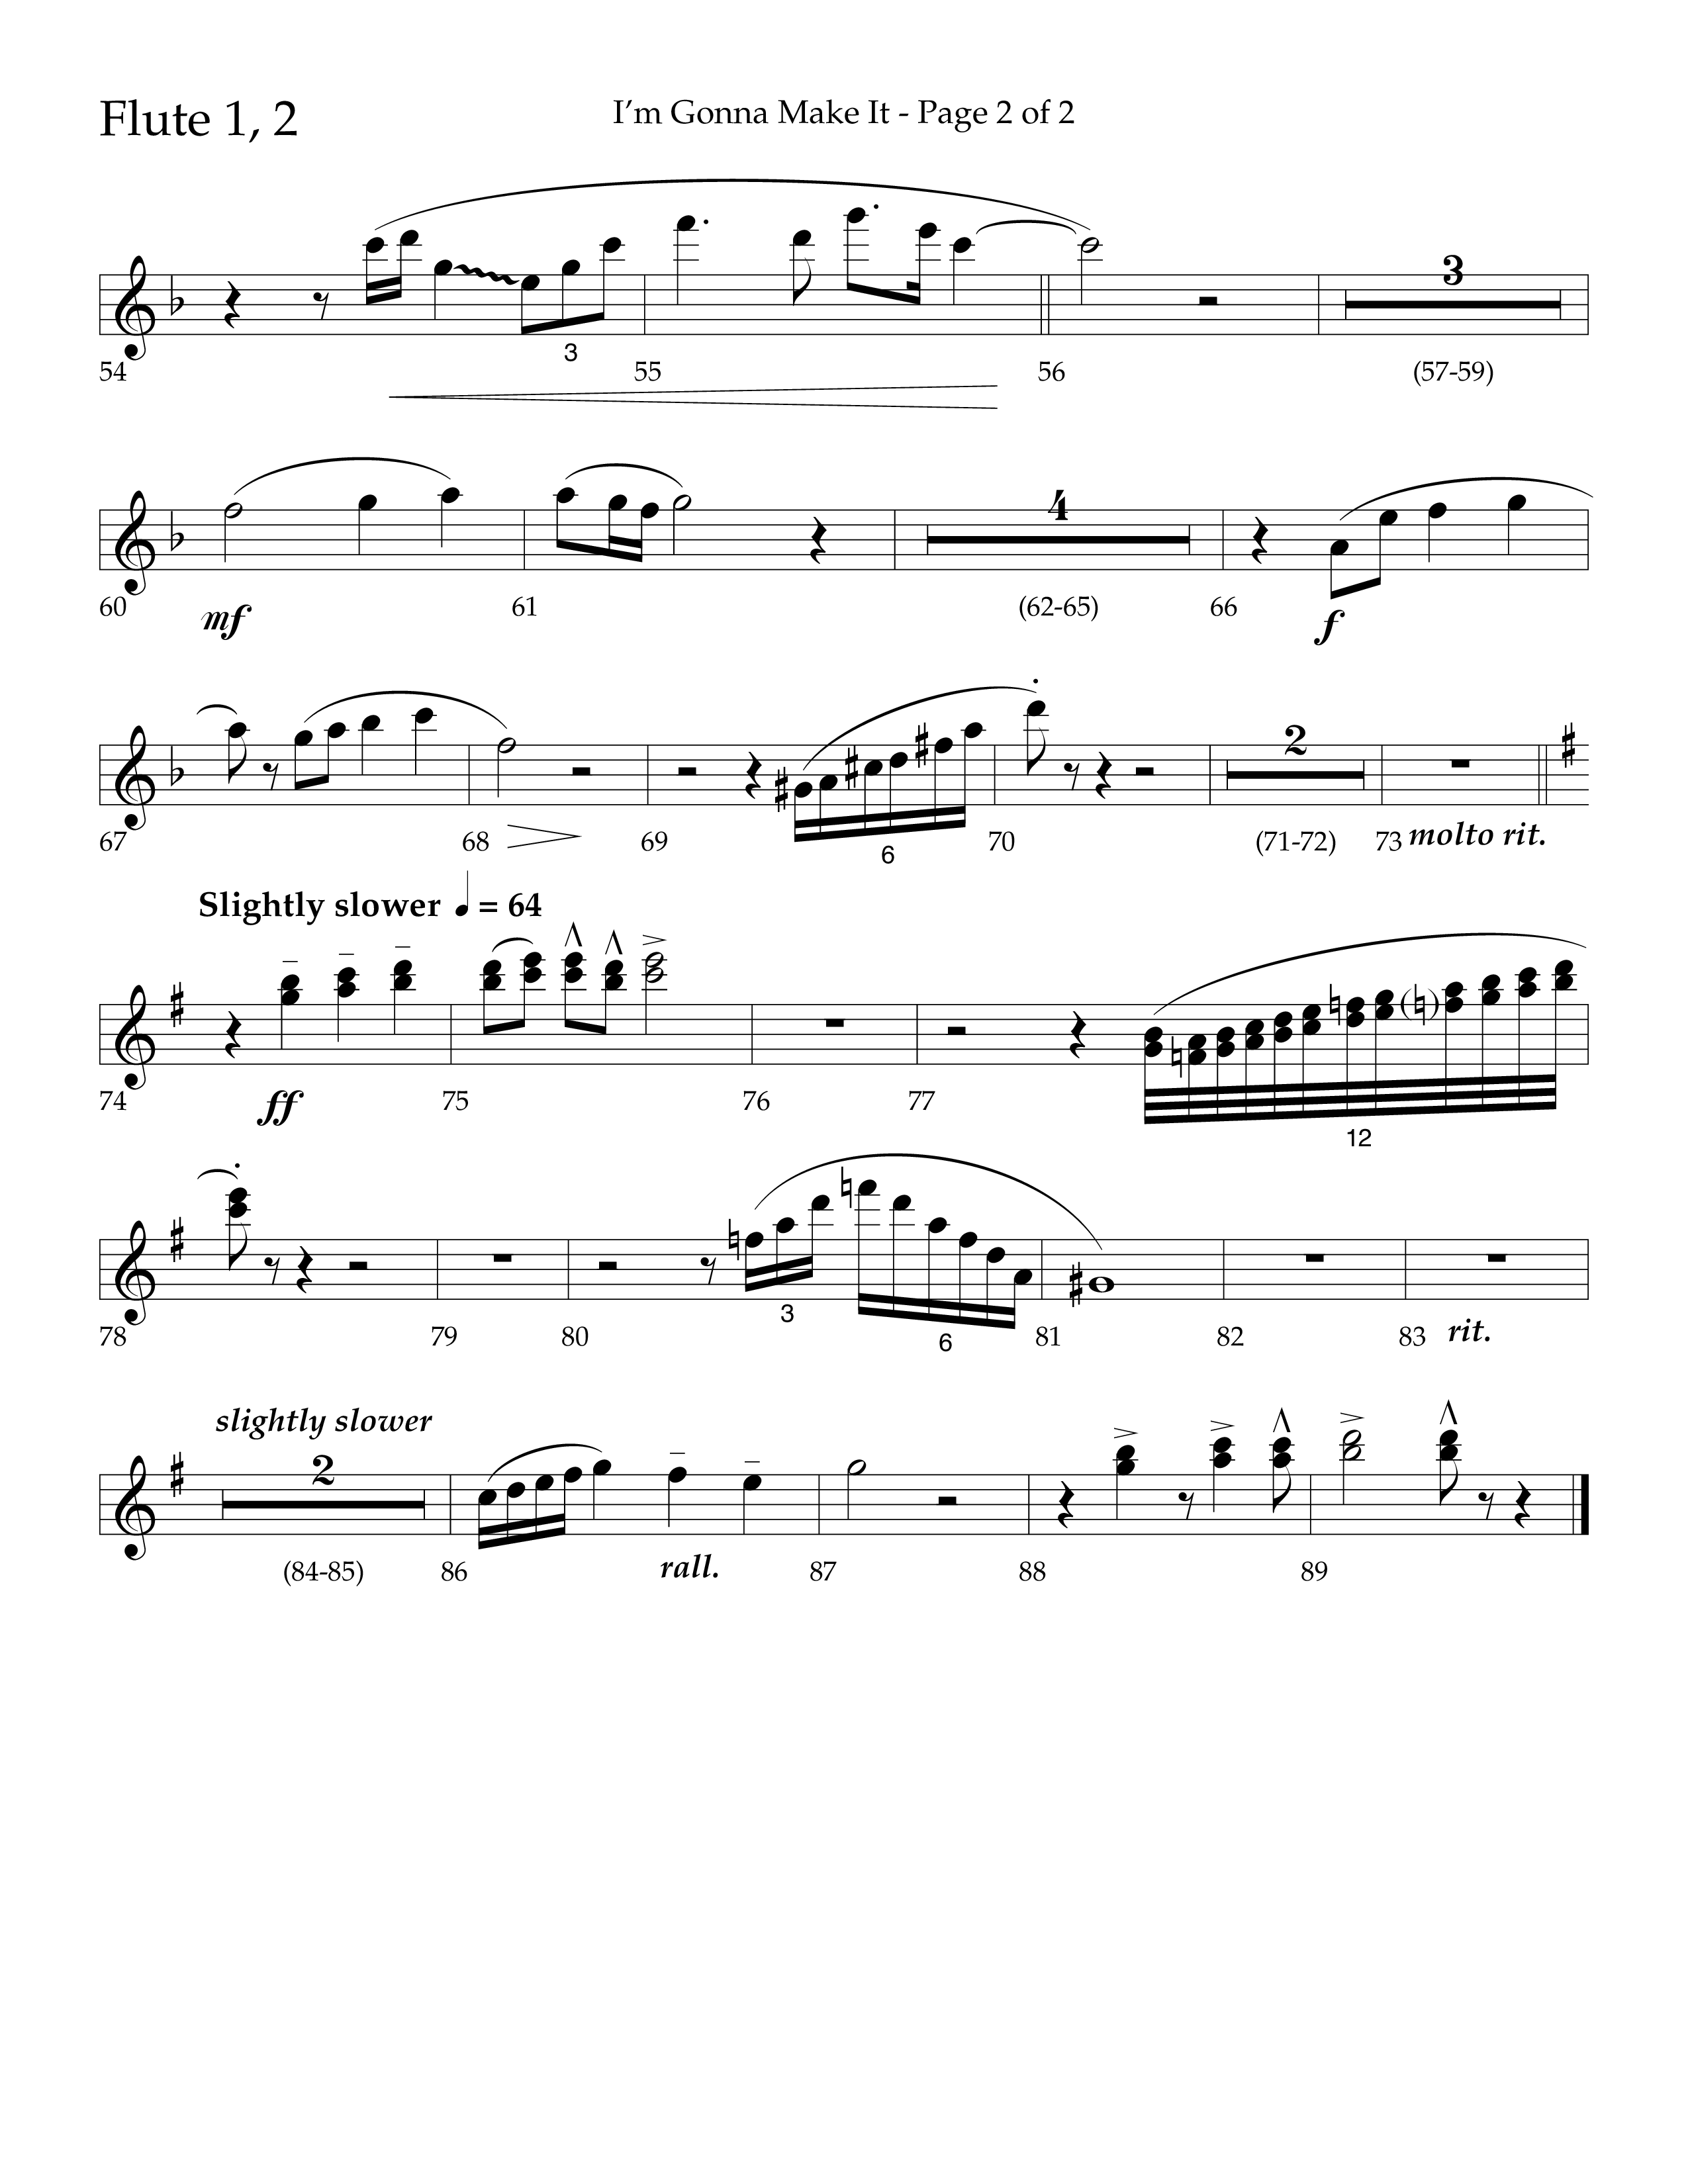 I'm Gonna Make It (Choral Anthem SATB) Flute 1/2 (Lifeway Choral / Arr. J. Daniel Smith)